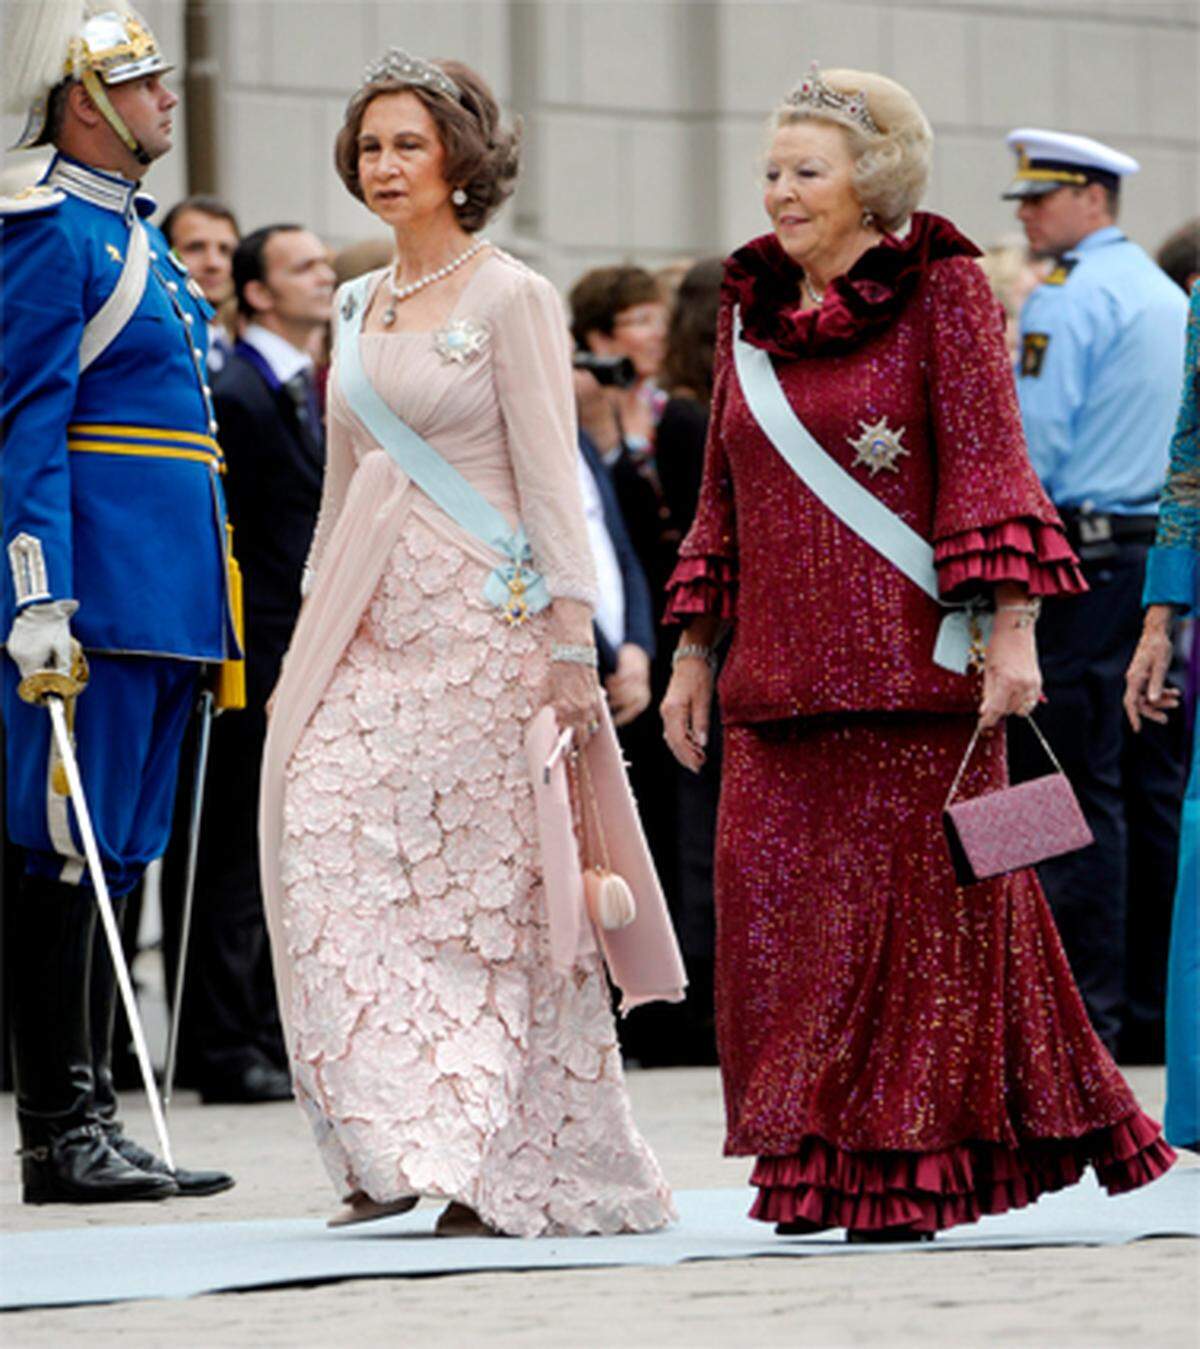 Diese hübsch dekorierten Damen sind Königin Sophia von Spanien und Königin Beatrix der Niederlande.